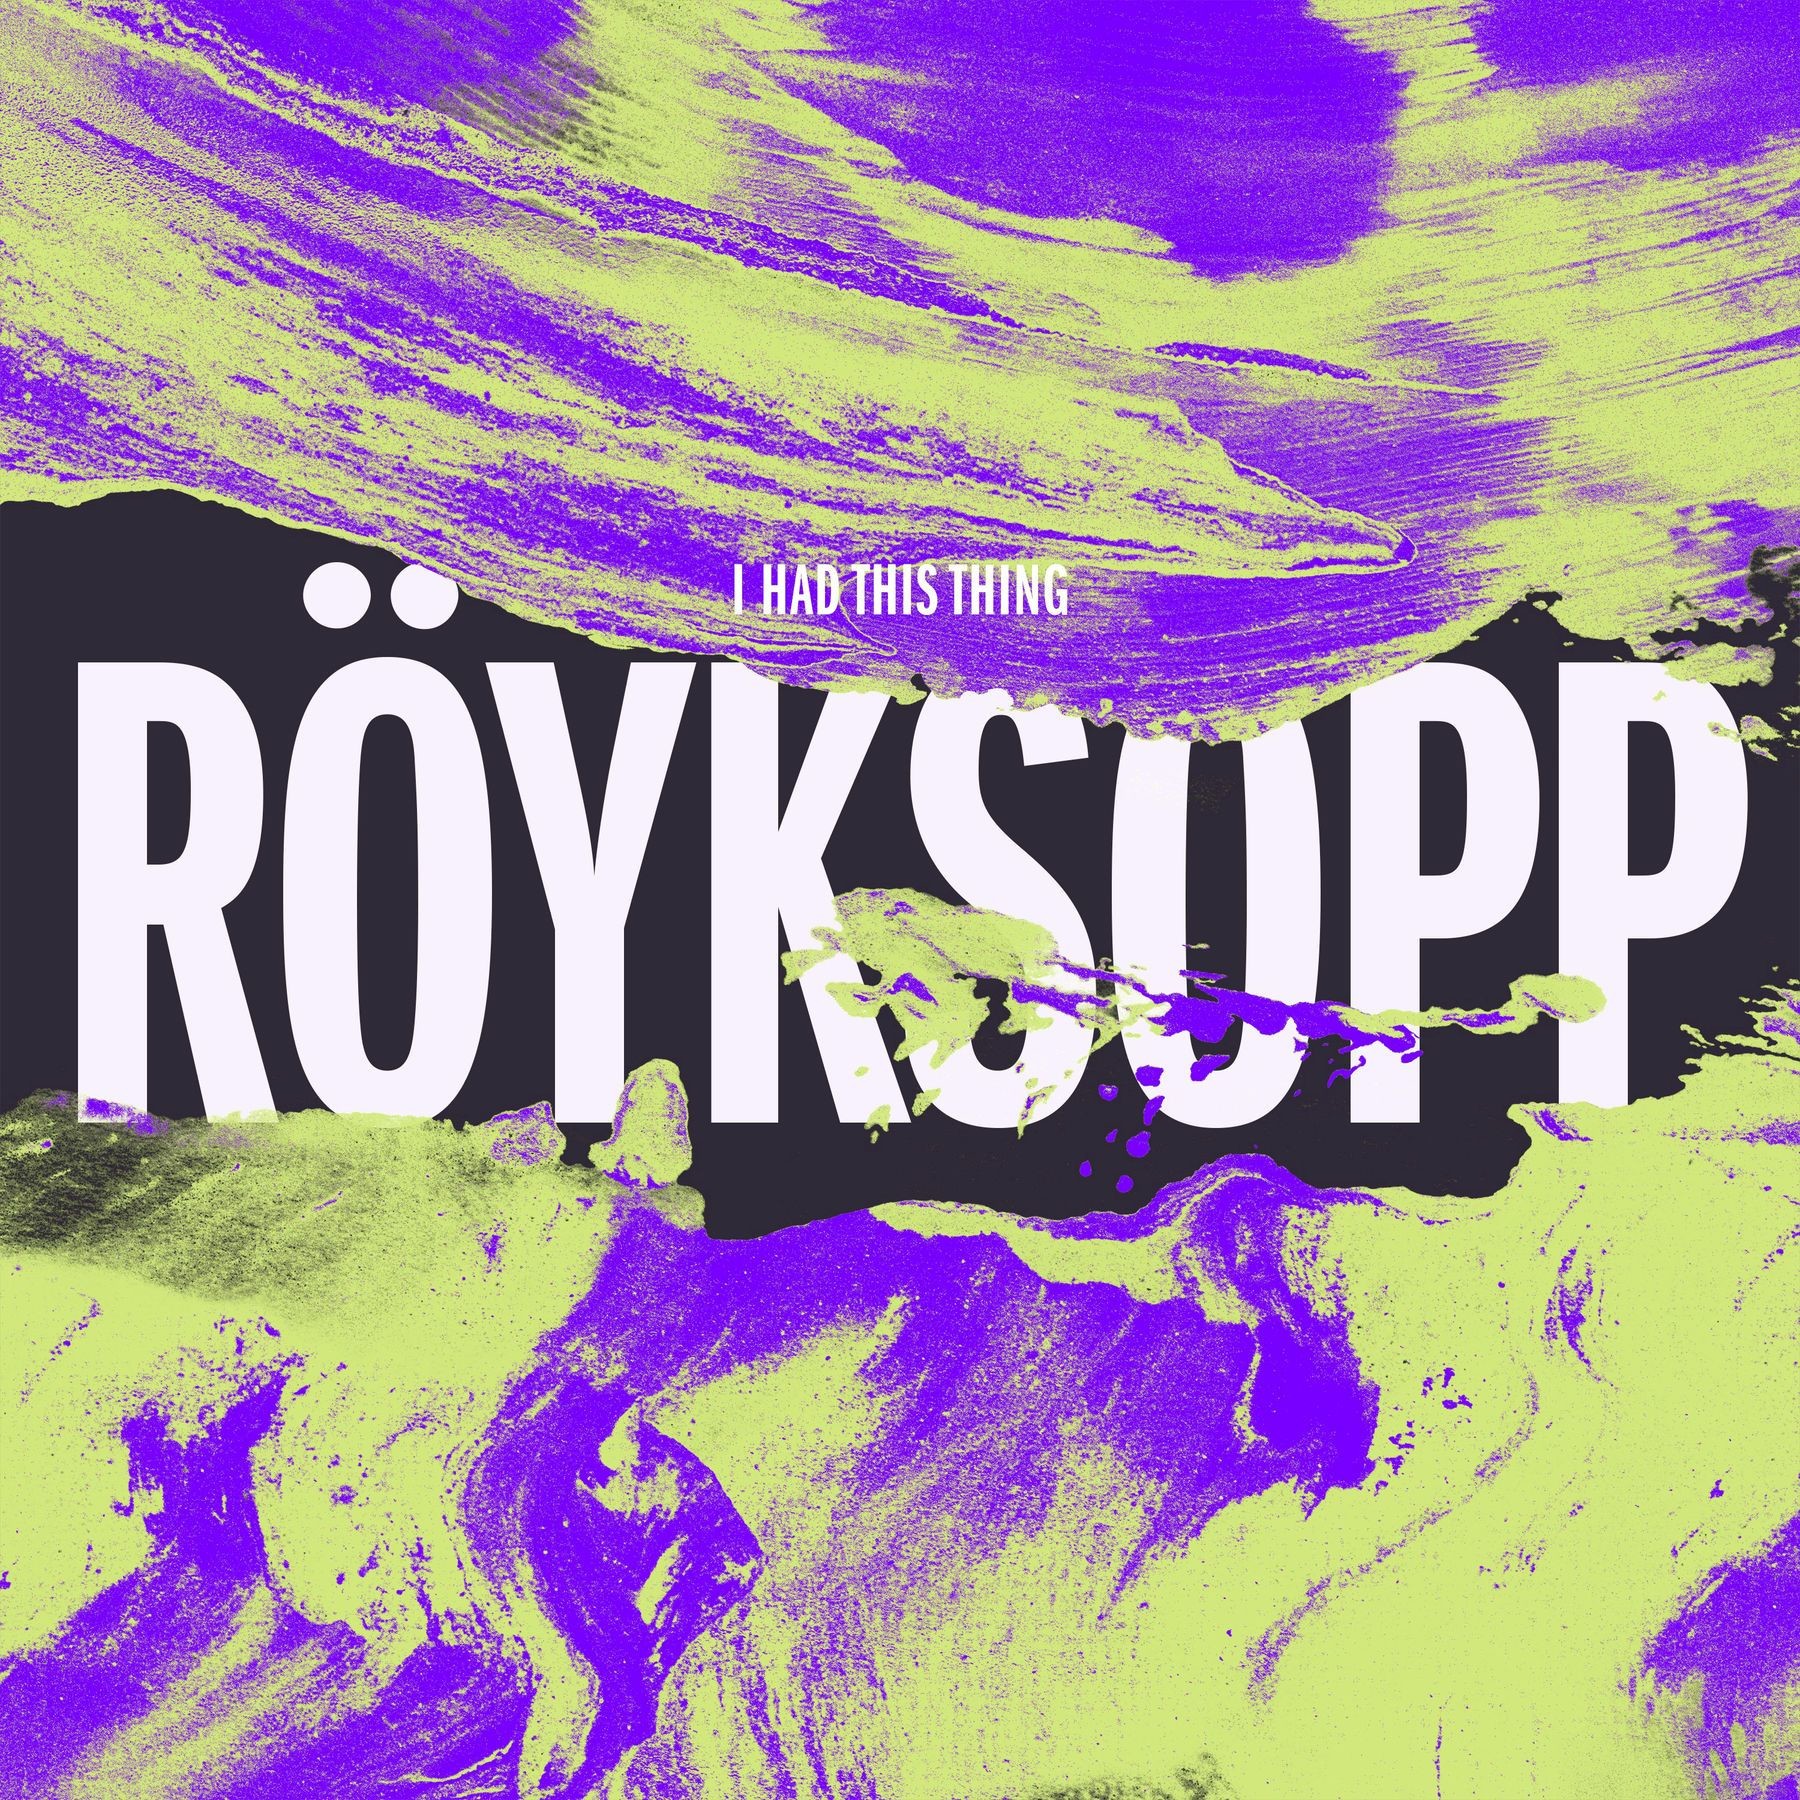 Royksopp comes again remix. Royksopp. Royksopp логотип. Royksopp альбом. Röyksopp: i had this thing.